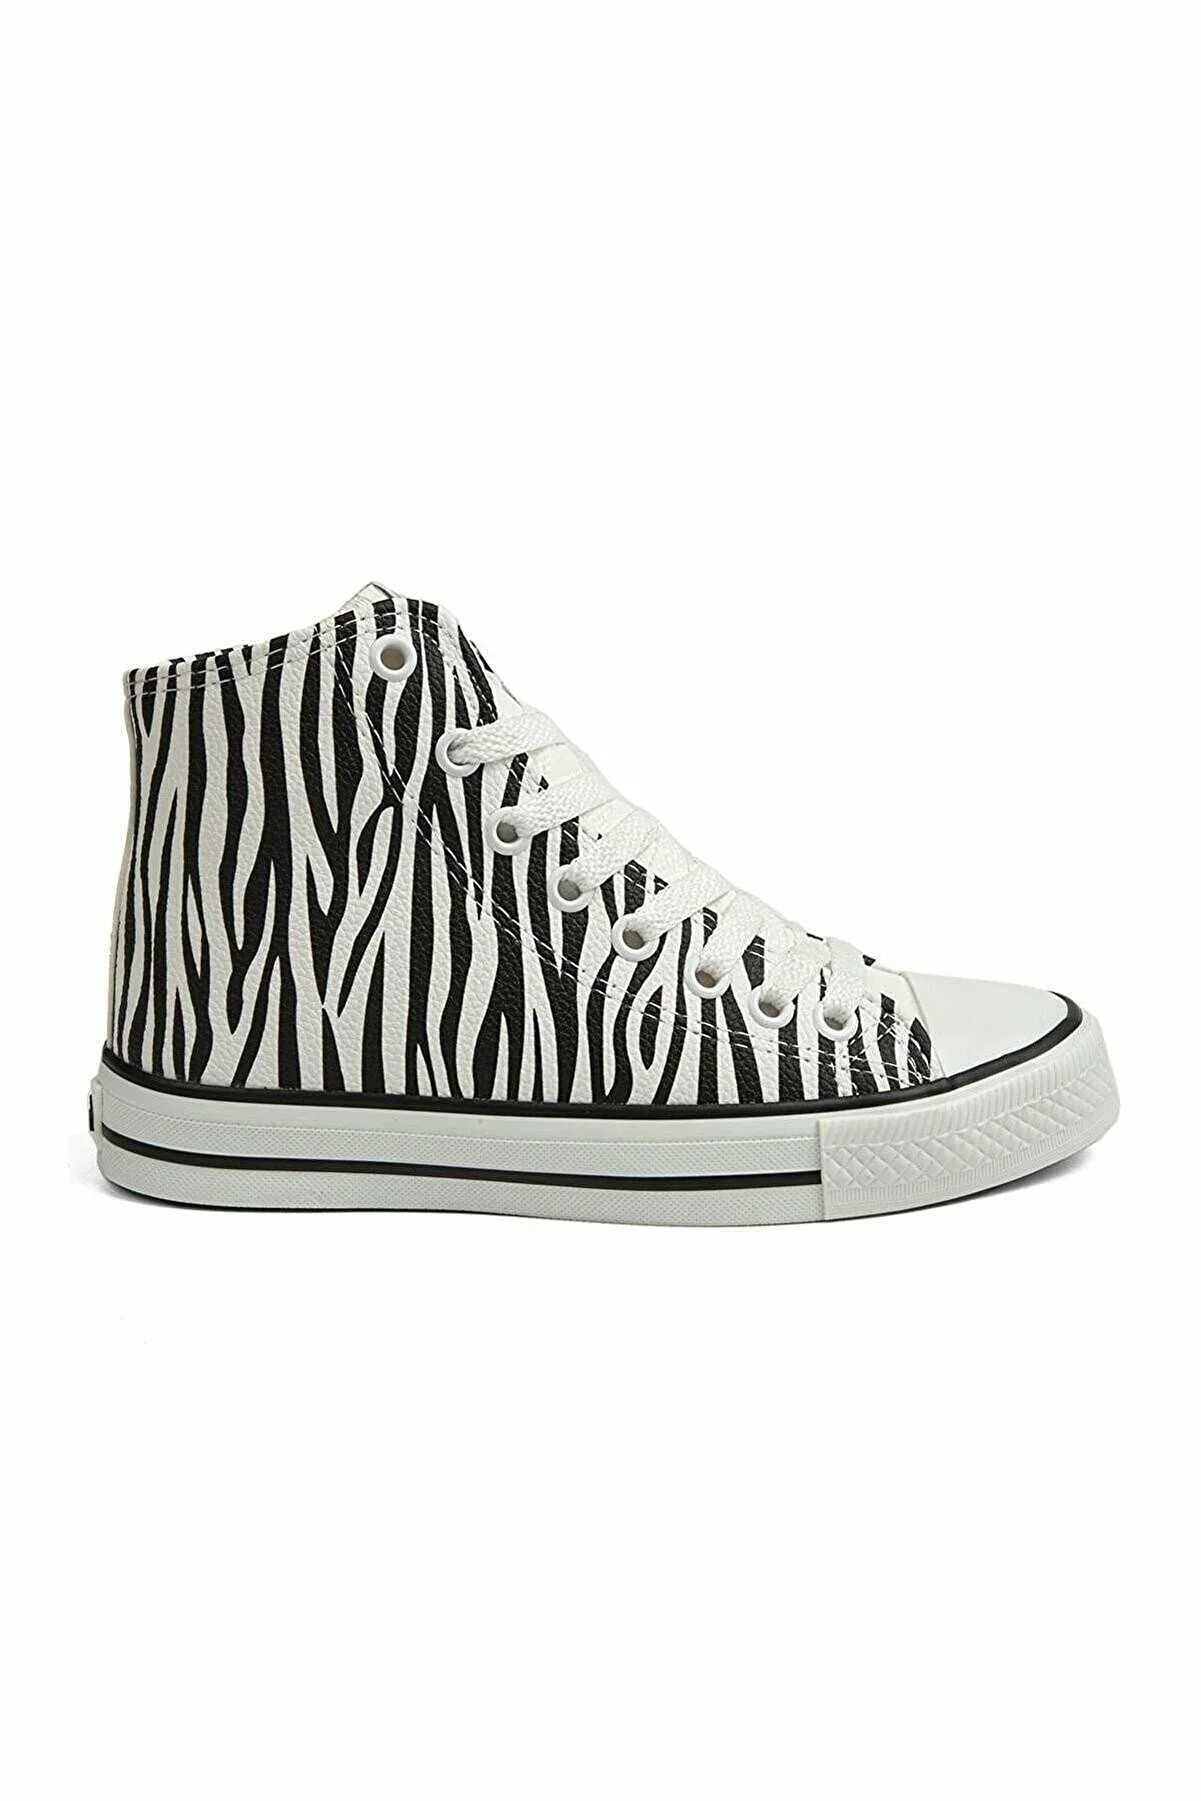 Kadın Spor Ayakkabı BN-30736-Zebra - 1